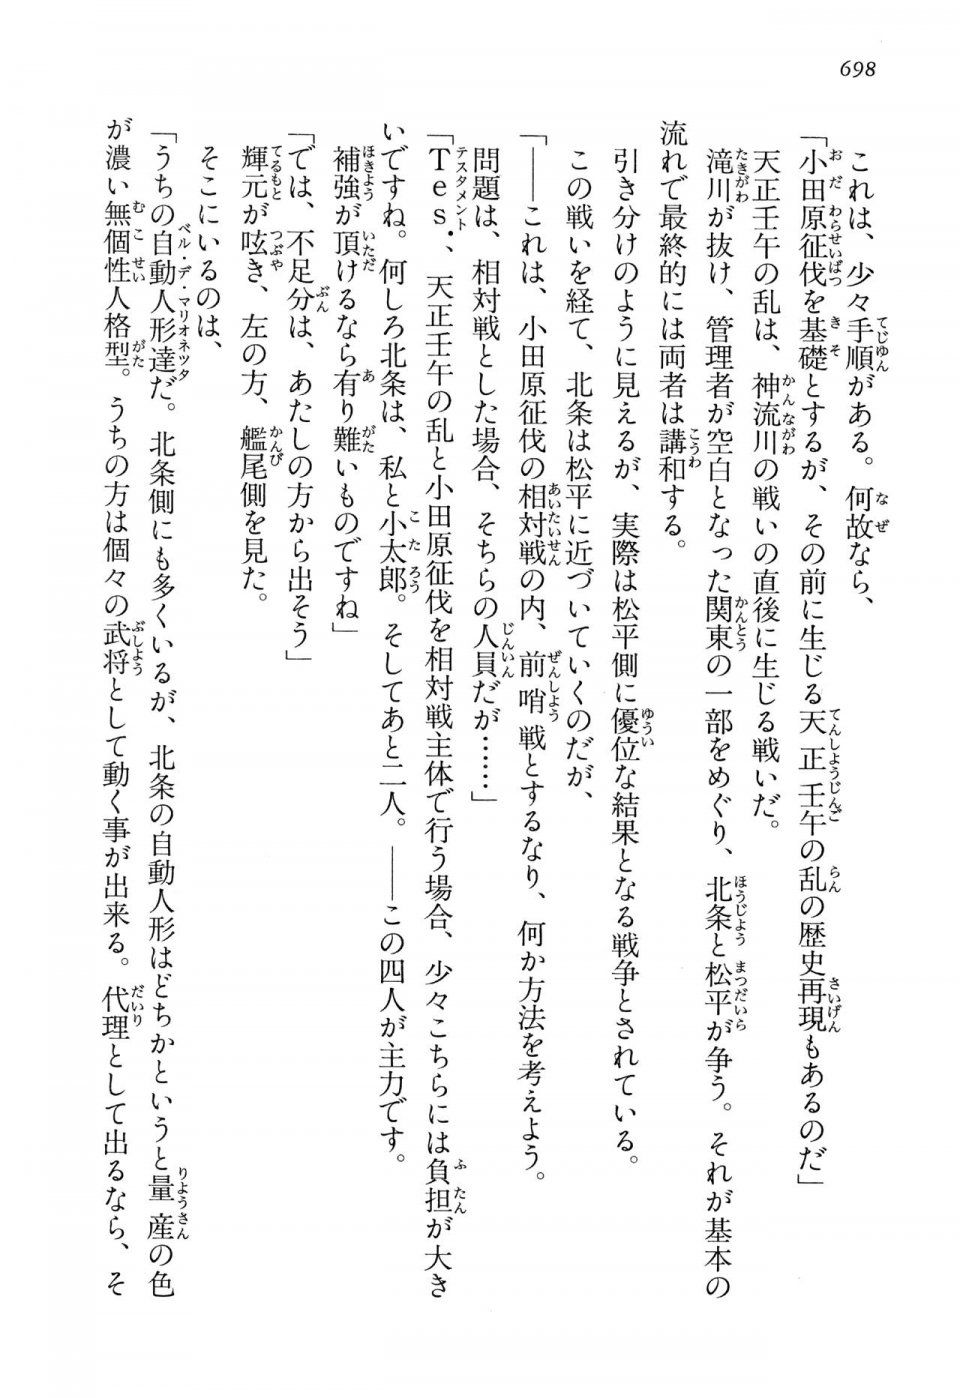 Kyoukai Senjou no Horizon LN Vol 13(6A) - Photo #698